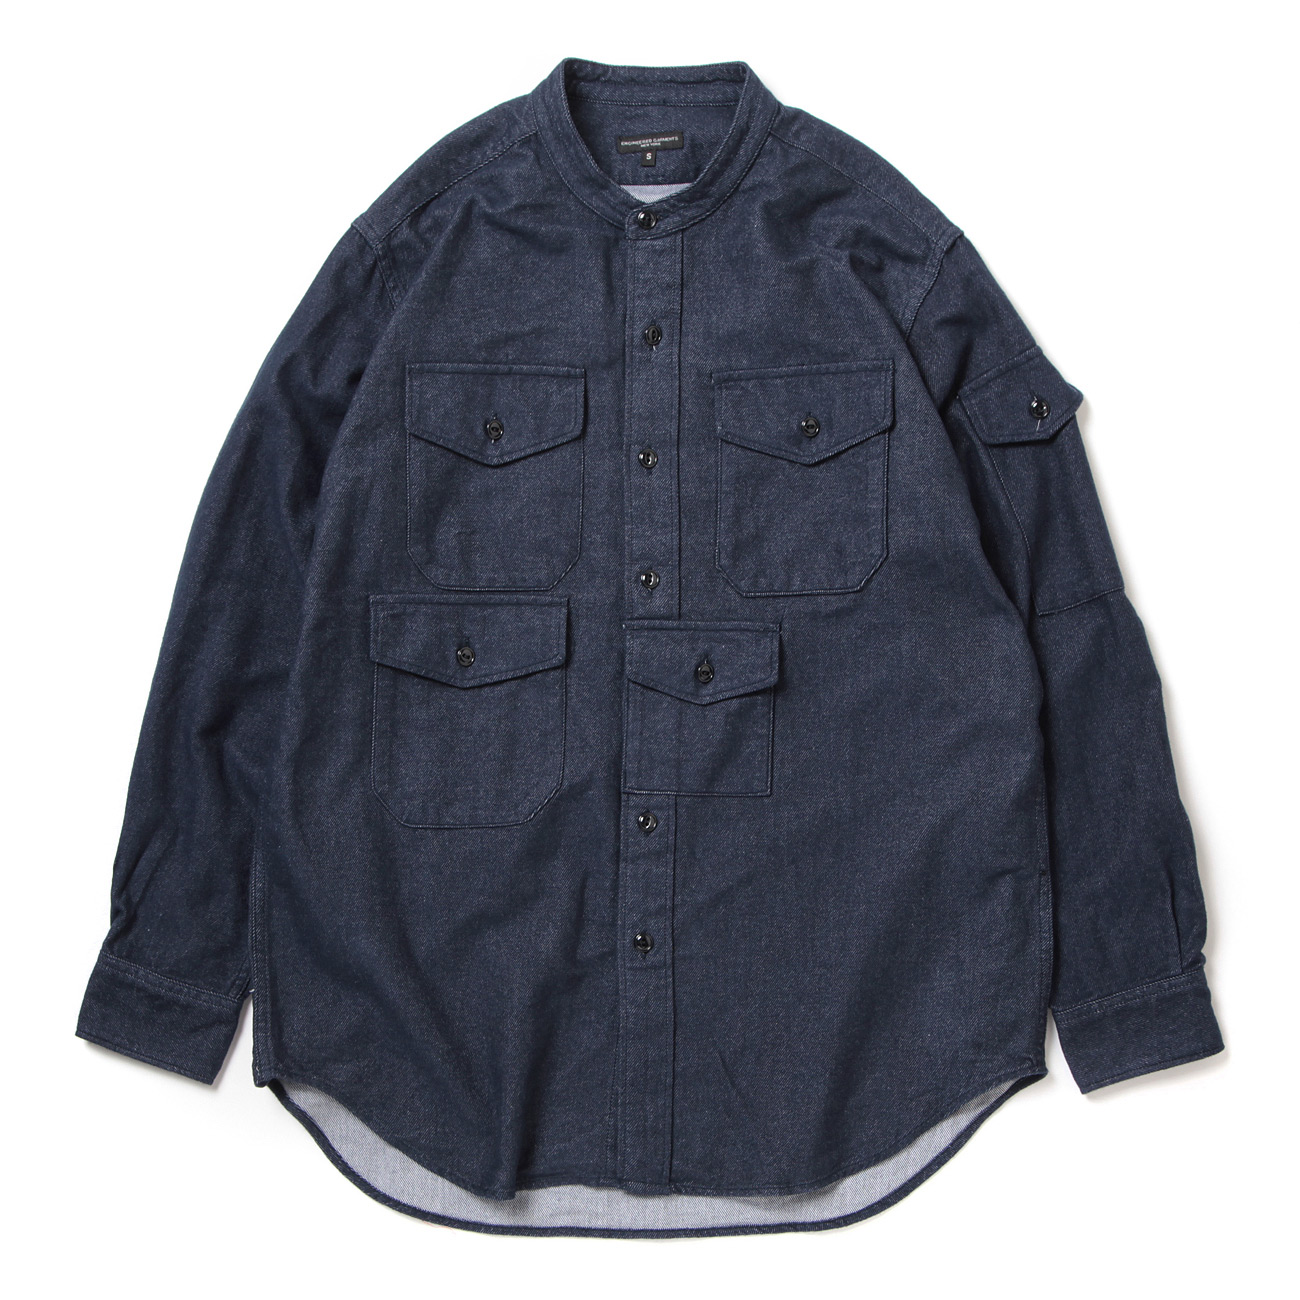 North Western Shirt - Cotton Denim Flannel - Indigo